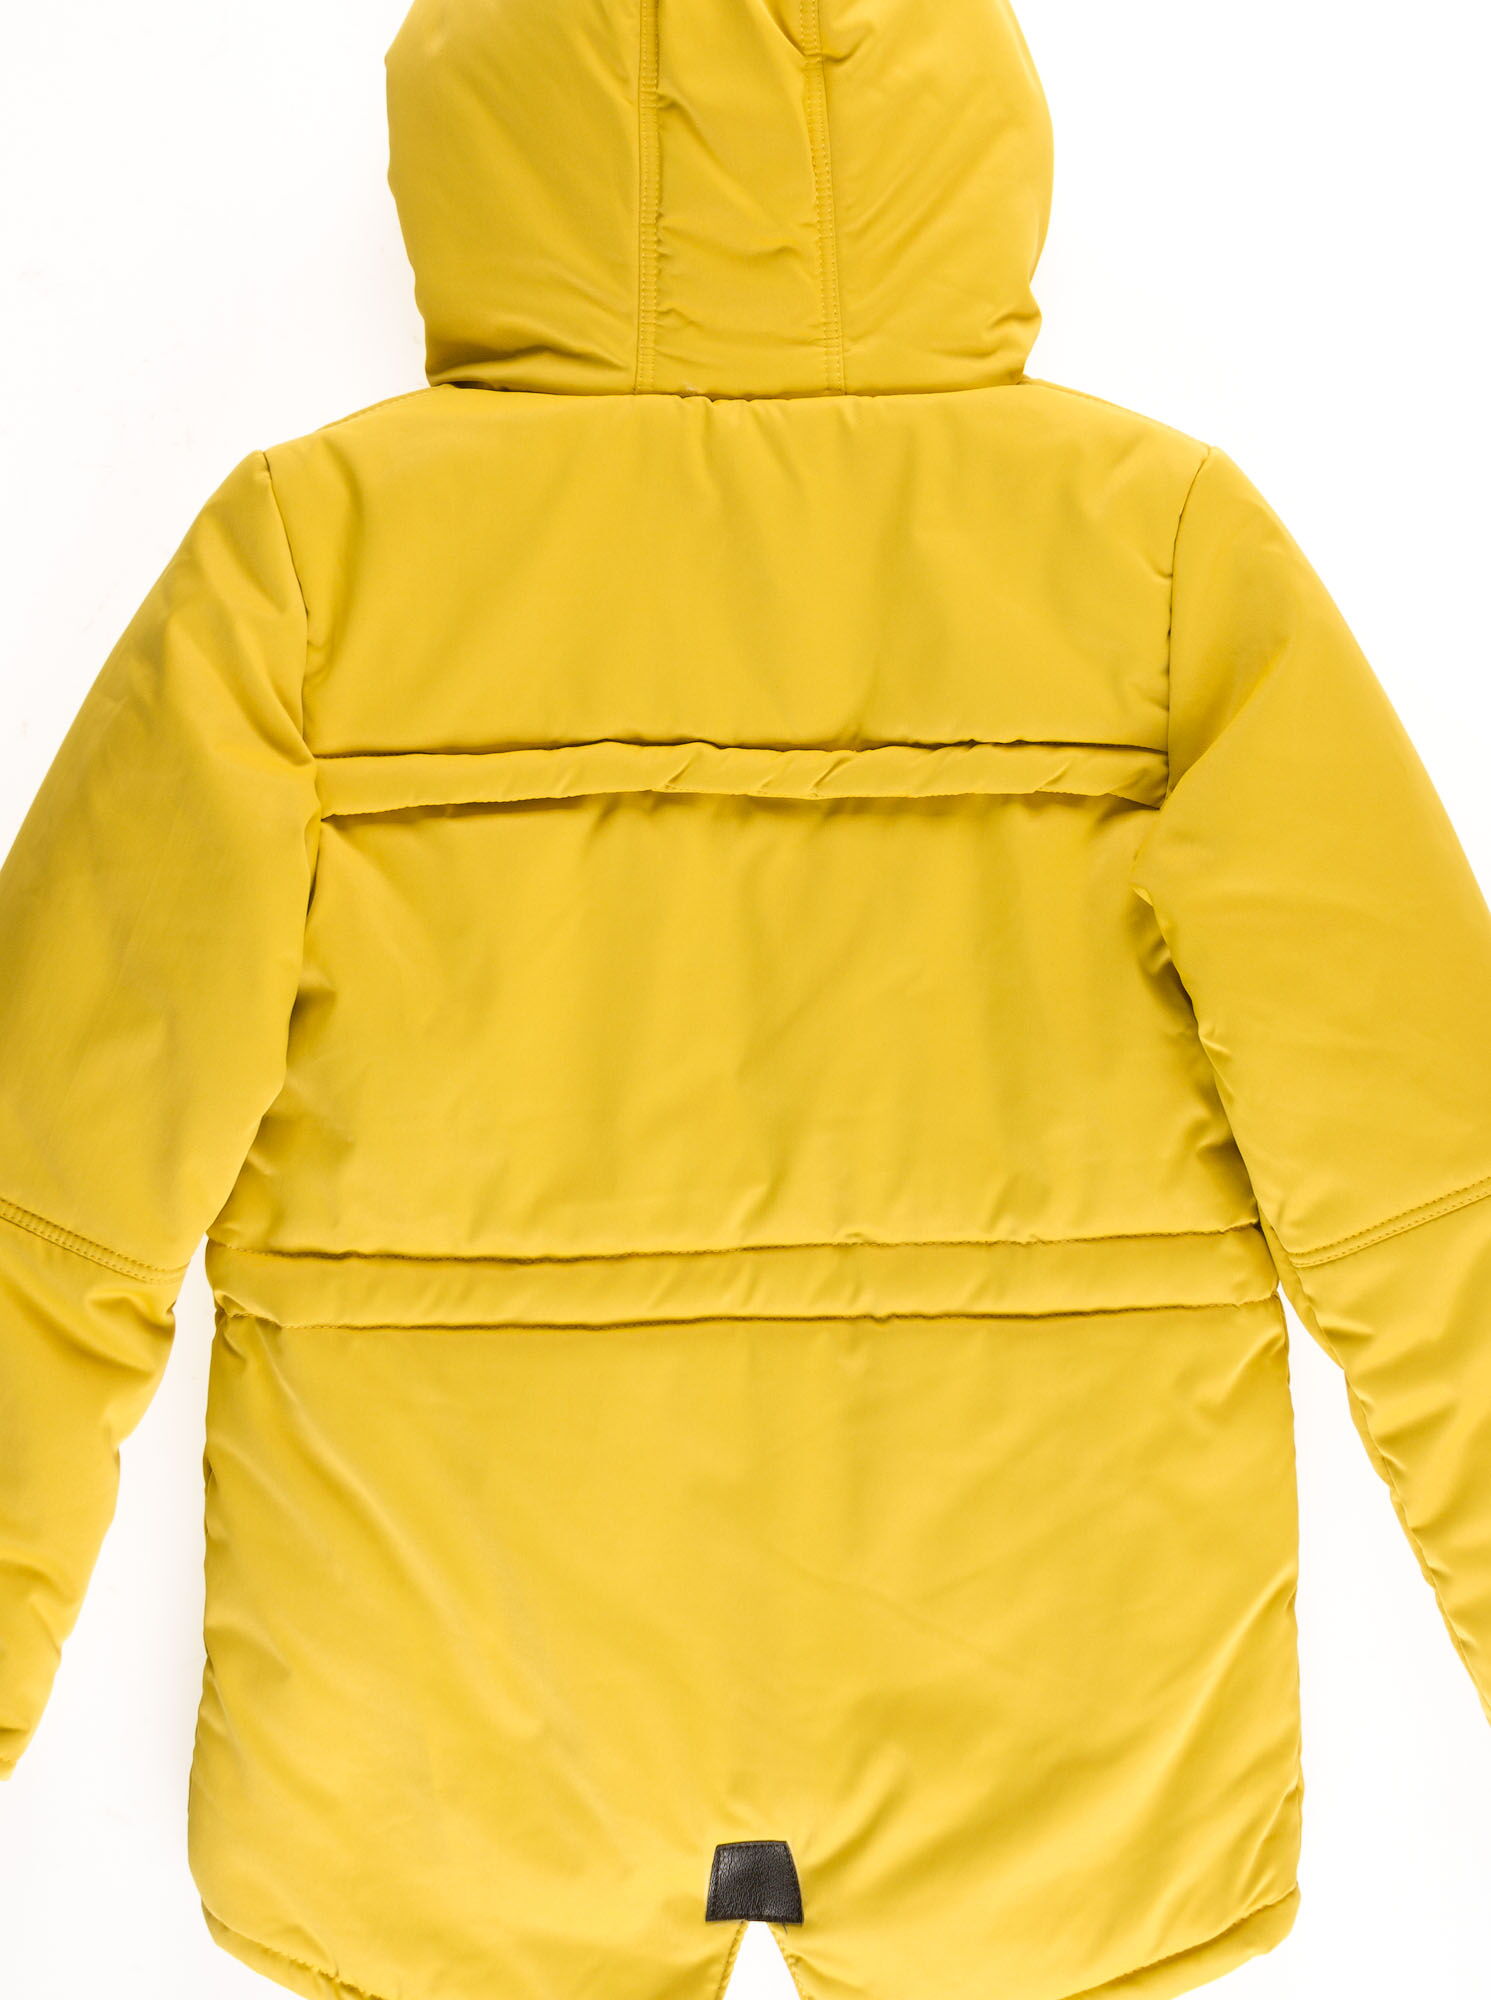 Куртка для мальчика ОДЯГАЙКО желтая 22149О - фото